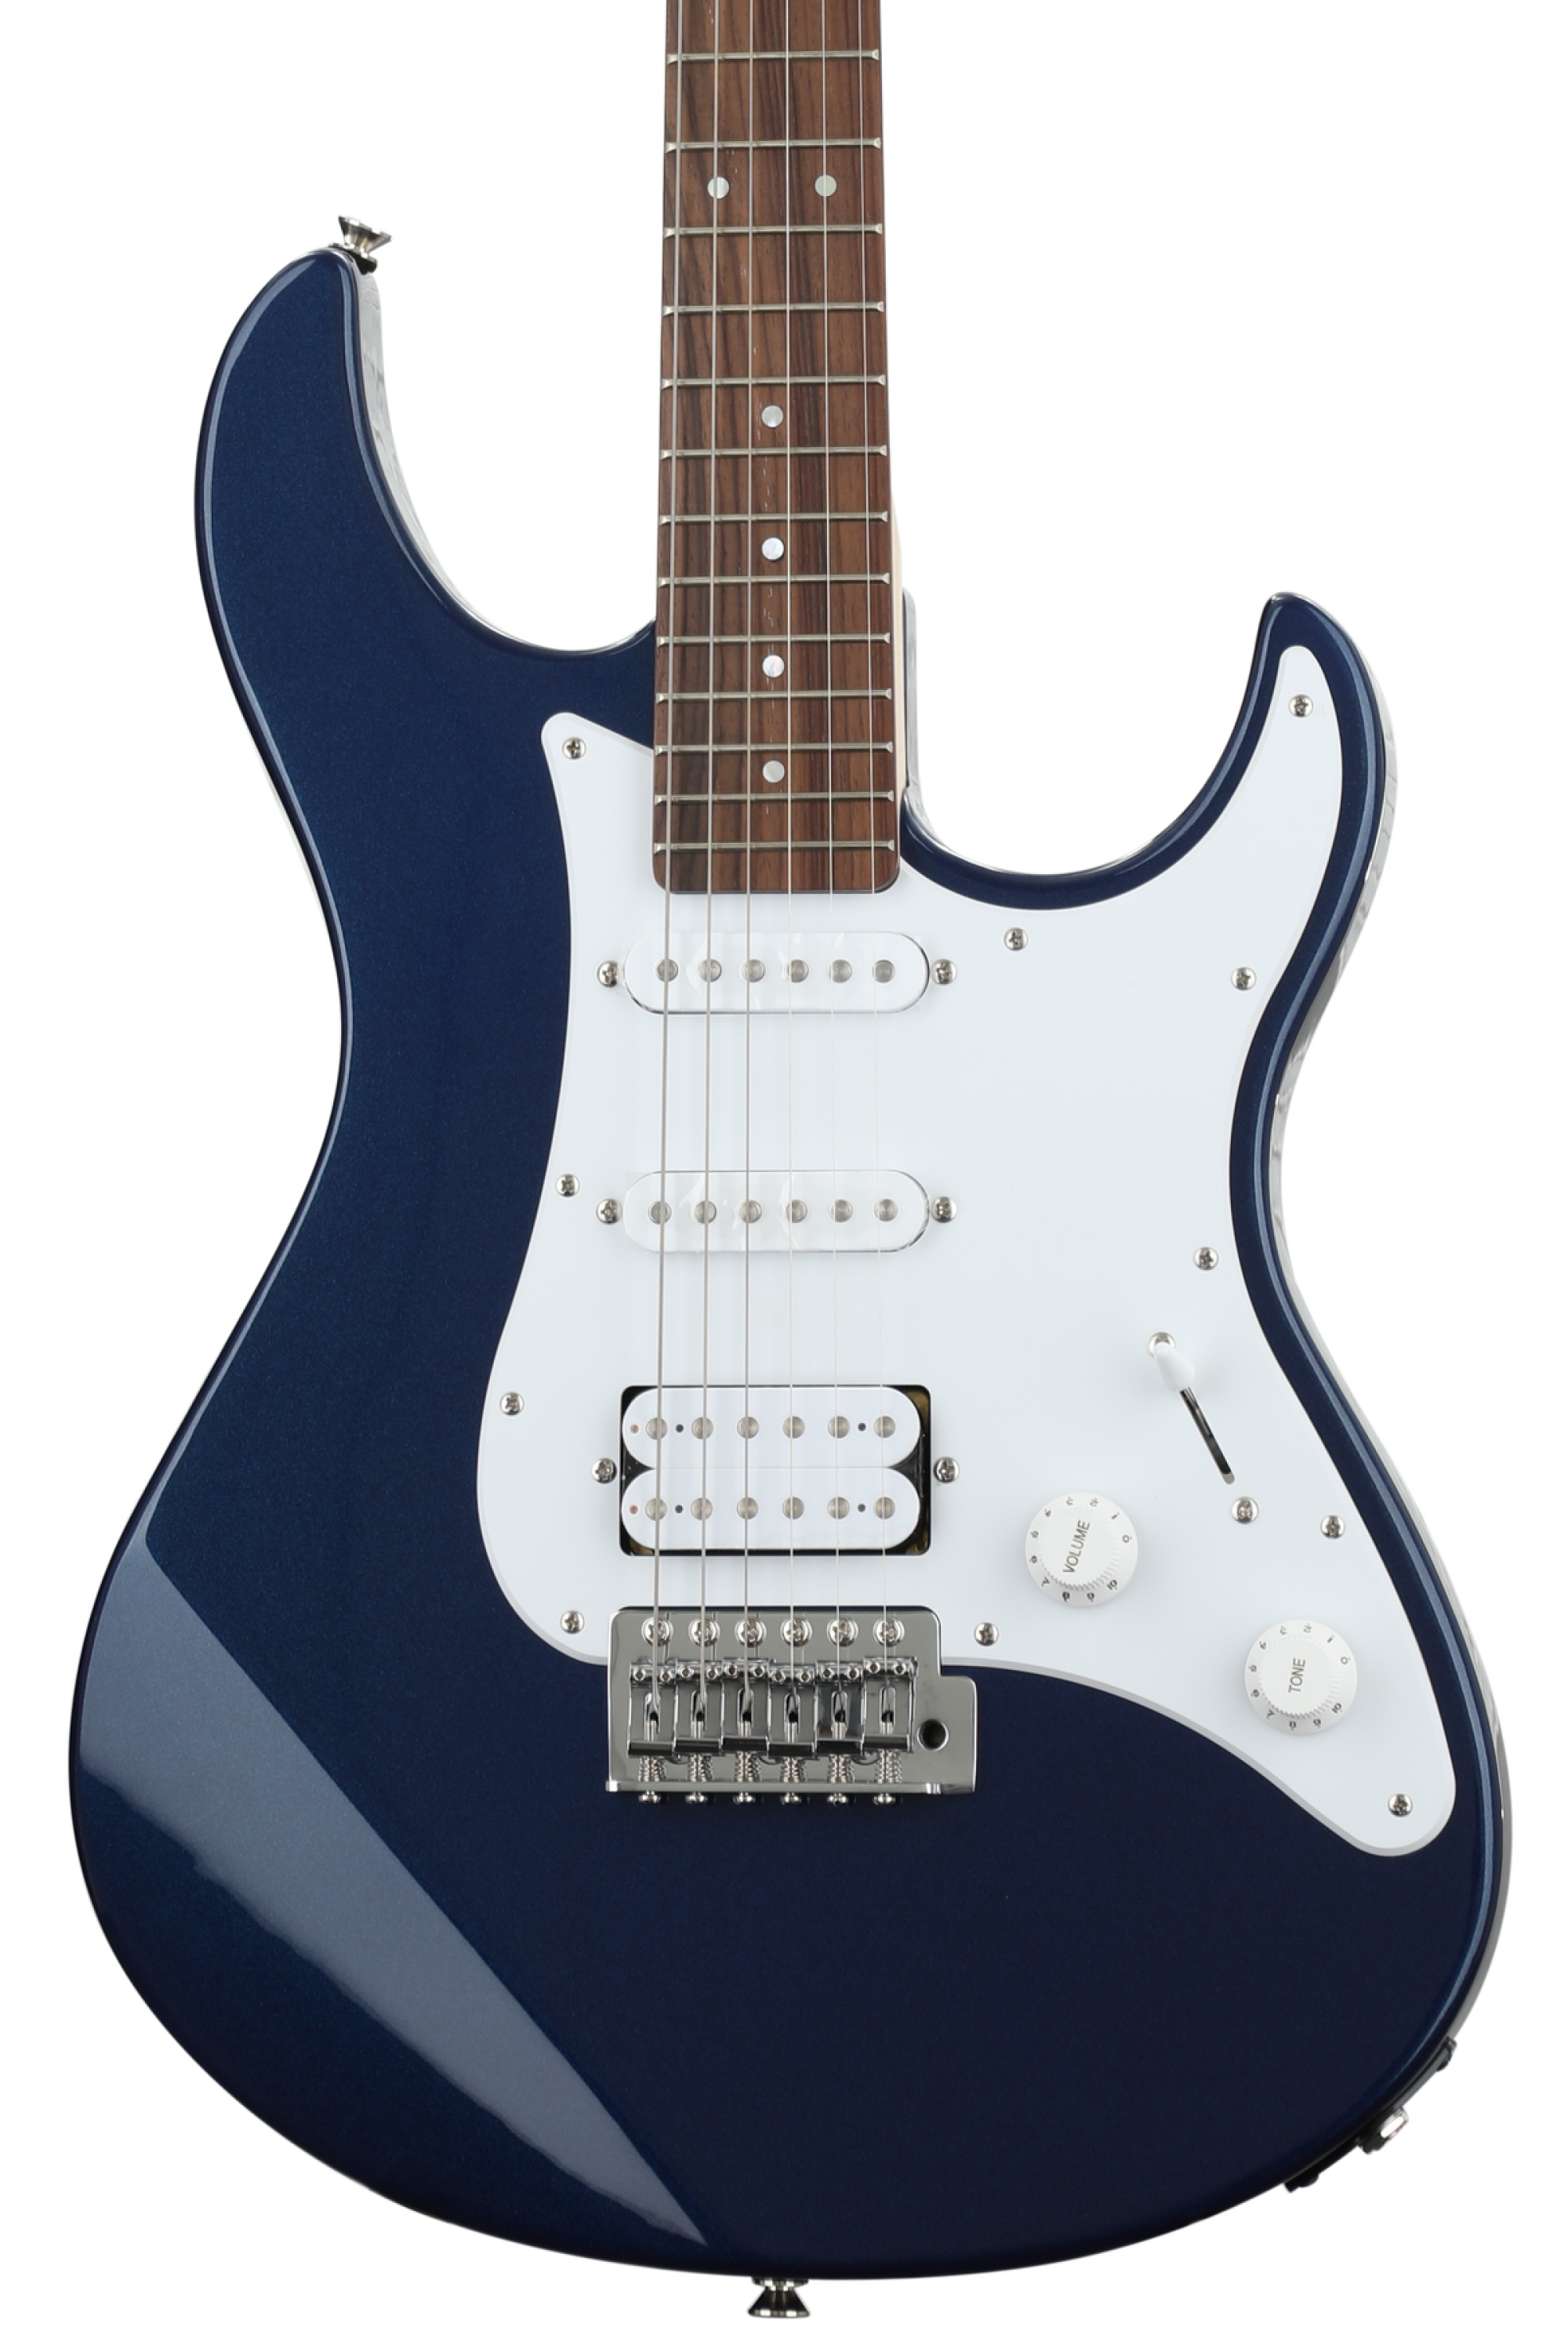 Bundled Item: Yamaha PAC012 Pacifica Electric Guitar - Metallic Blue